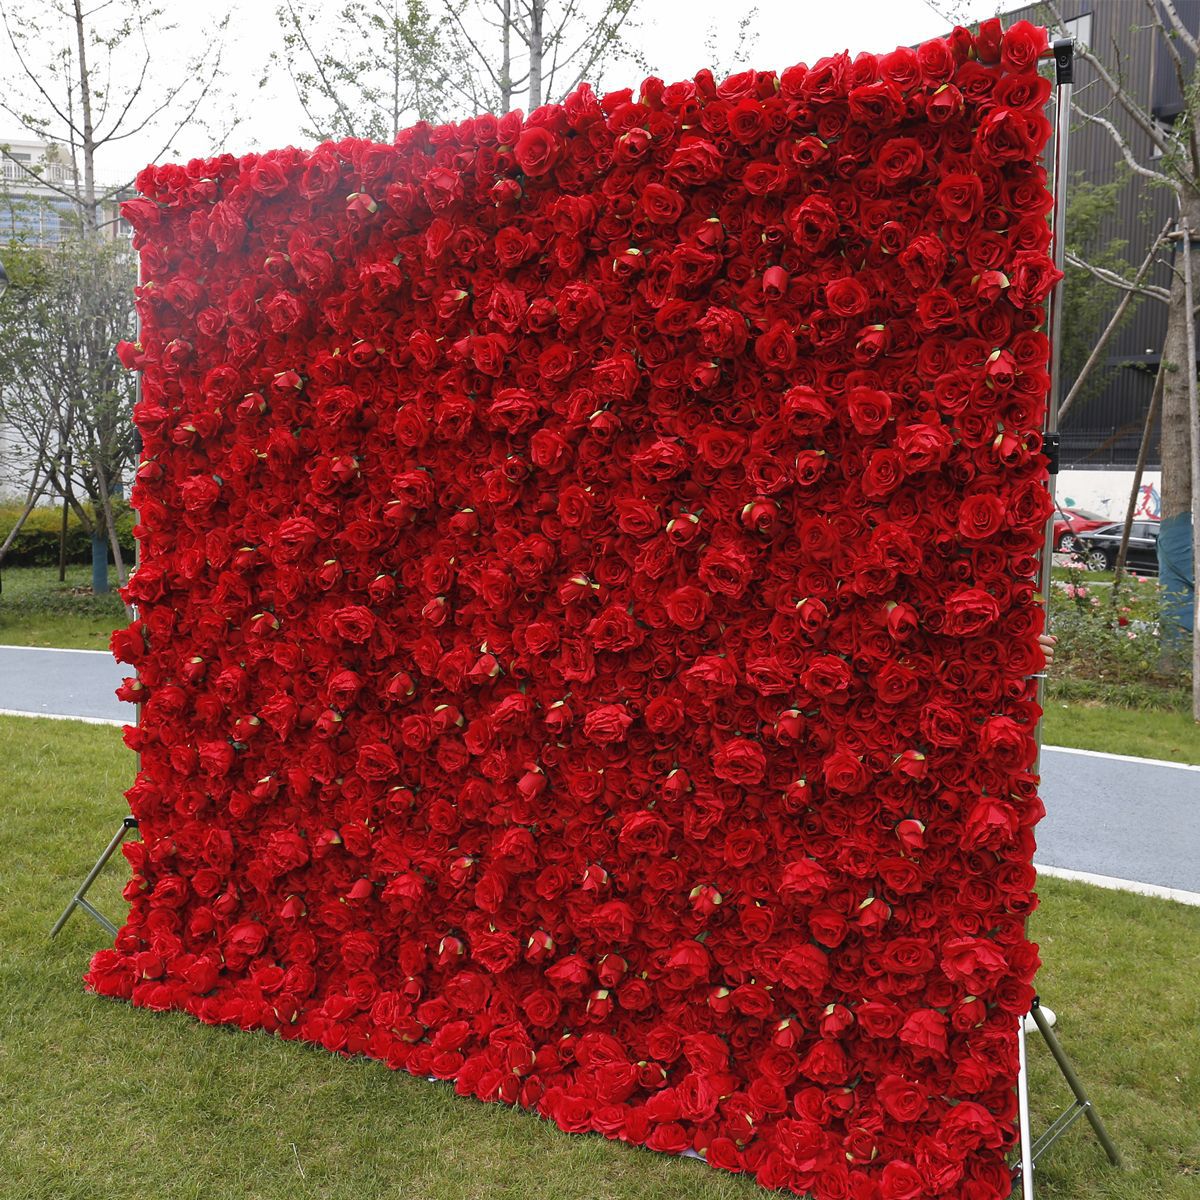 Symulowana różana ściana na tkaninowej dekoracji ślubnej czerwona ściana tła, dekoracja okna centrum handlowego, ściana roślin, kompozycja kwiatowa